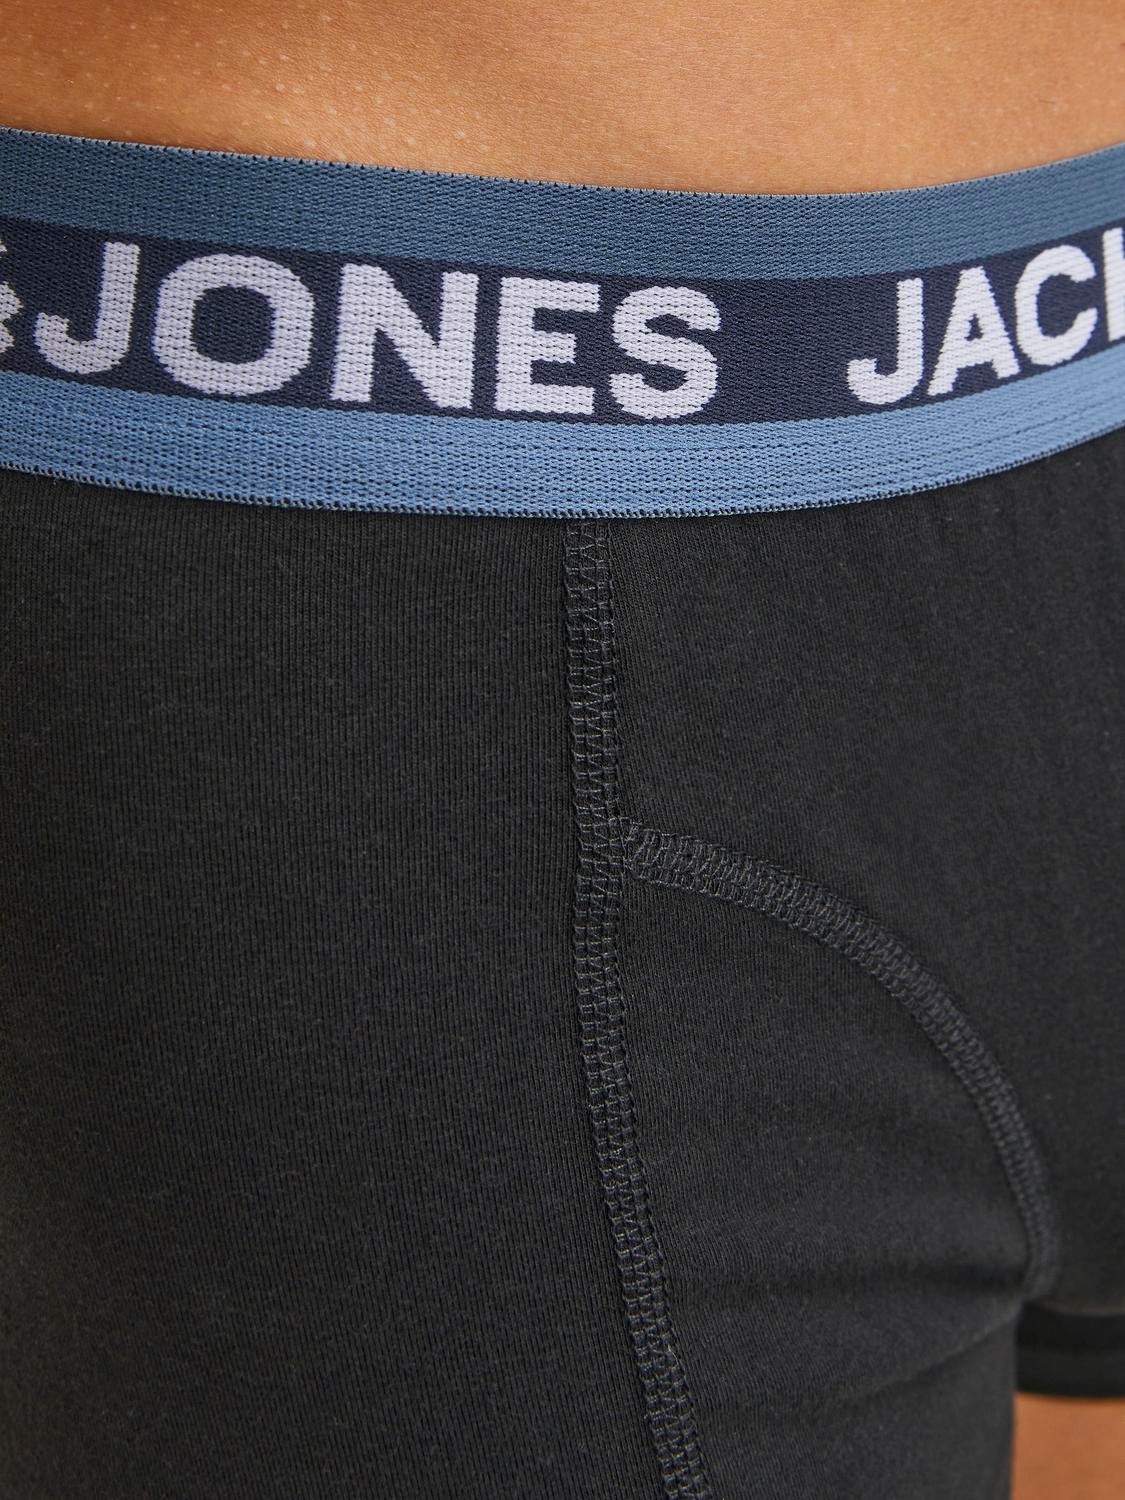 Jack & Jones 3-pack Trunks -Black - 12246322